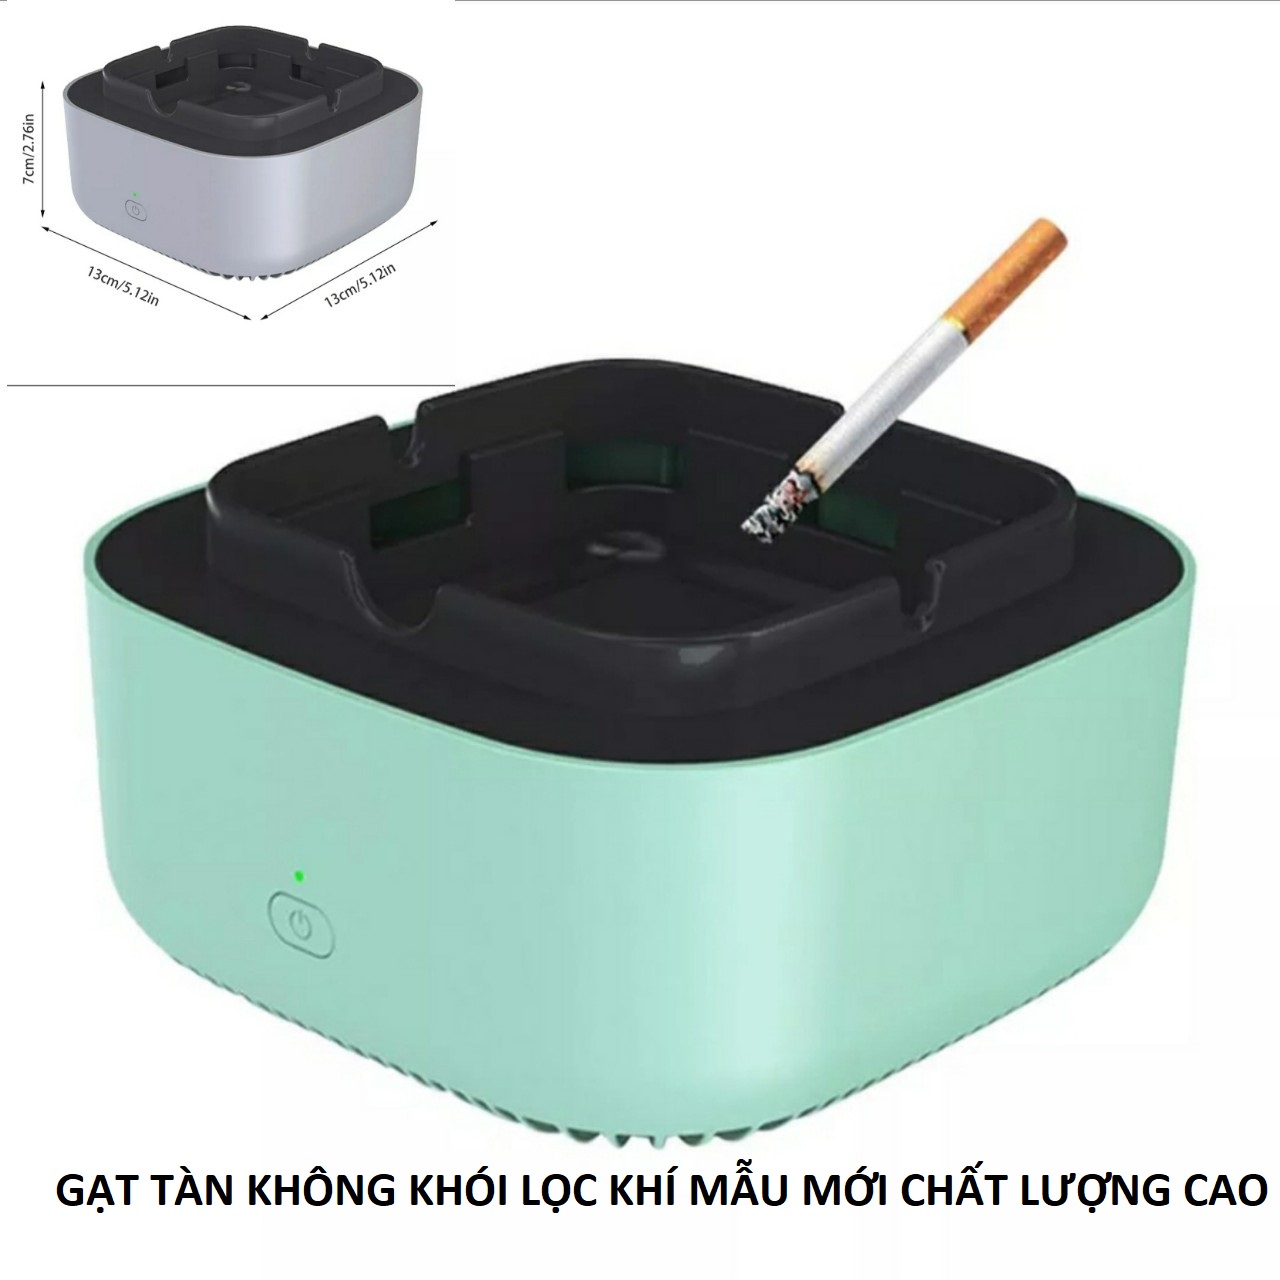 (GIÁ RẺ) Gạt tàn thuôc lá không khói có chức năng lọc không khí tạo ion tự động mẫu mới sang trọng loại tốt